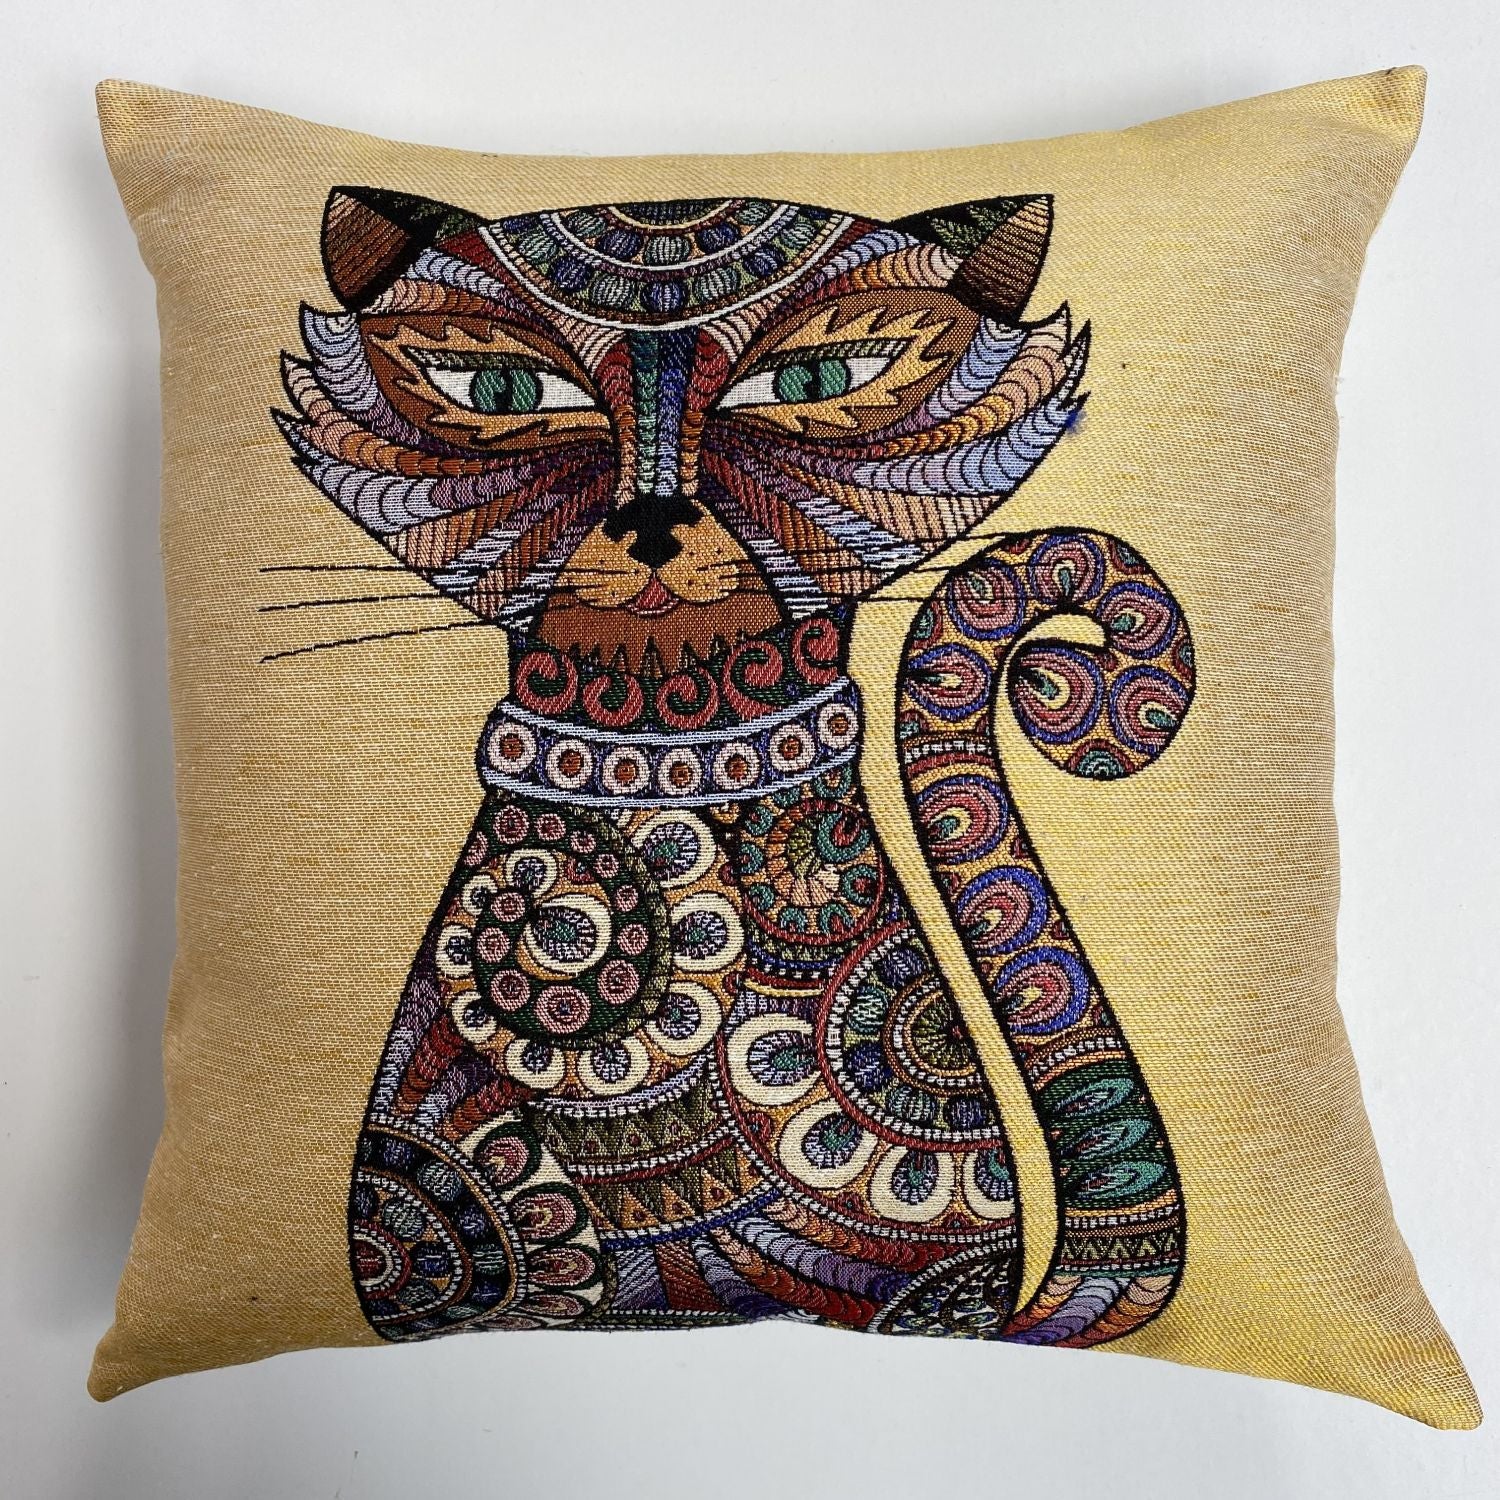 Cat Pillow 45x45cm - Pillow Cover - Cat Lover Gift - Cat Owner Gift - Cat Lover Gift Women - Cat Gifts for Cat Lovers - Fun Pillow